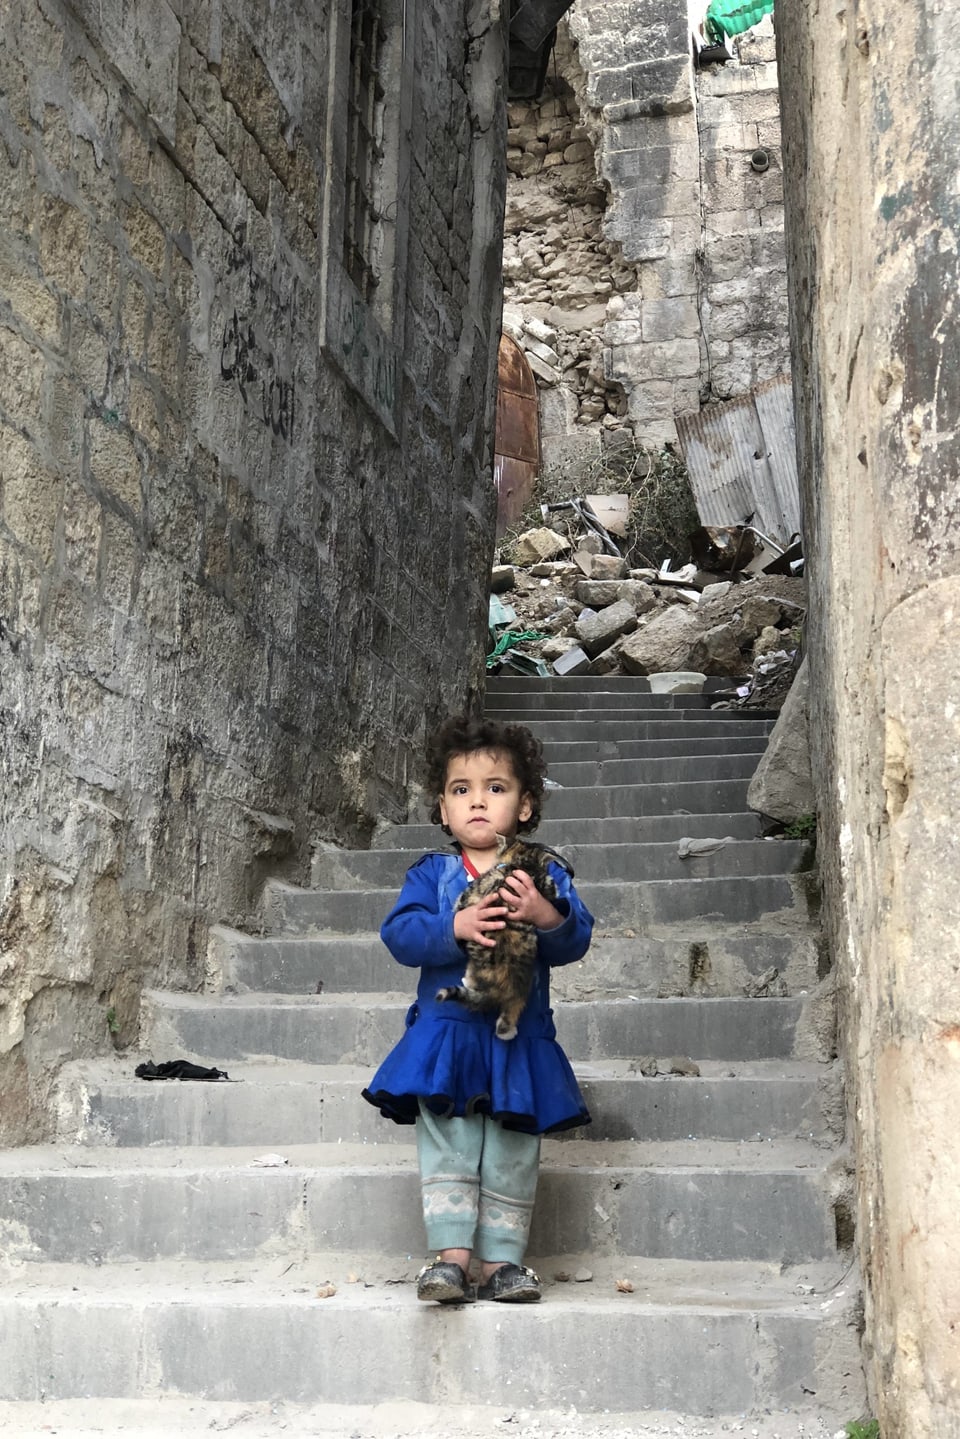 Kind in Aleppos Gassen, 22.12.17